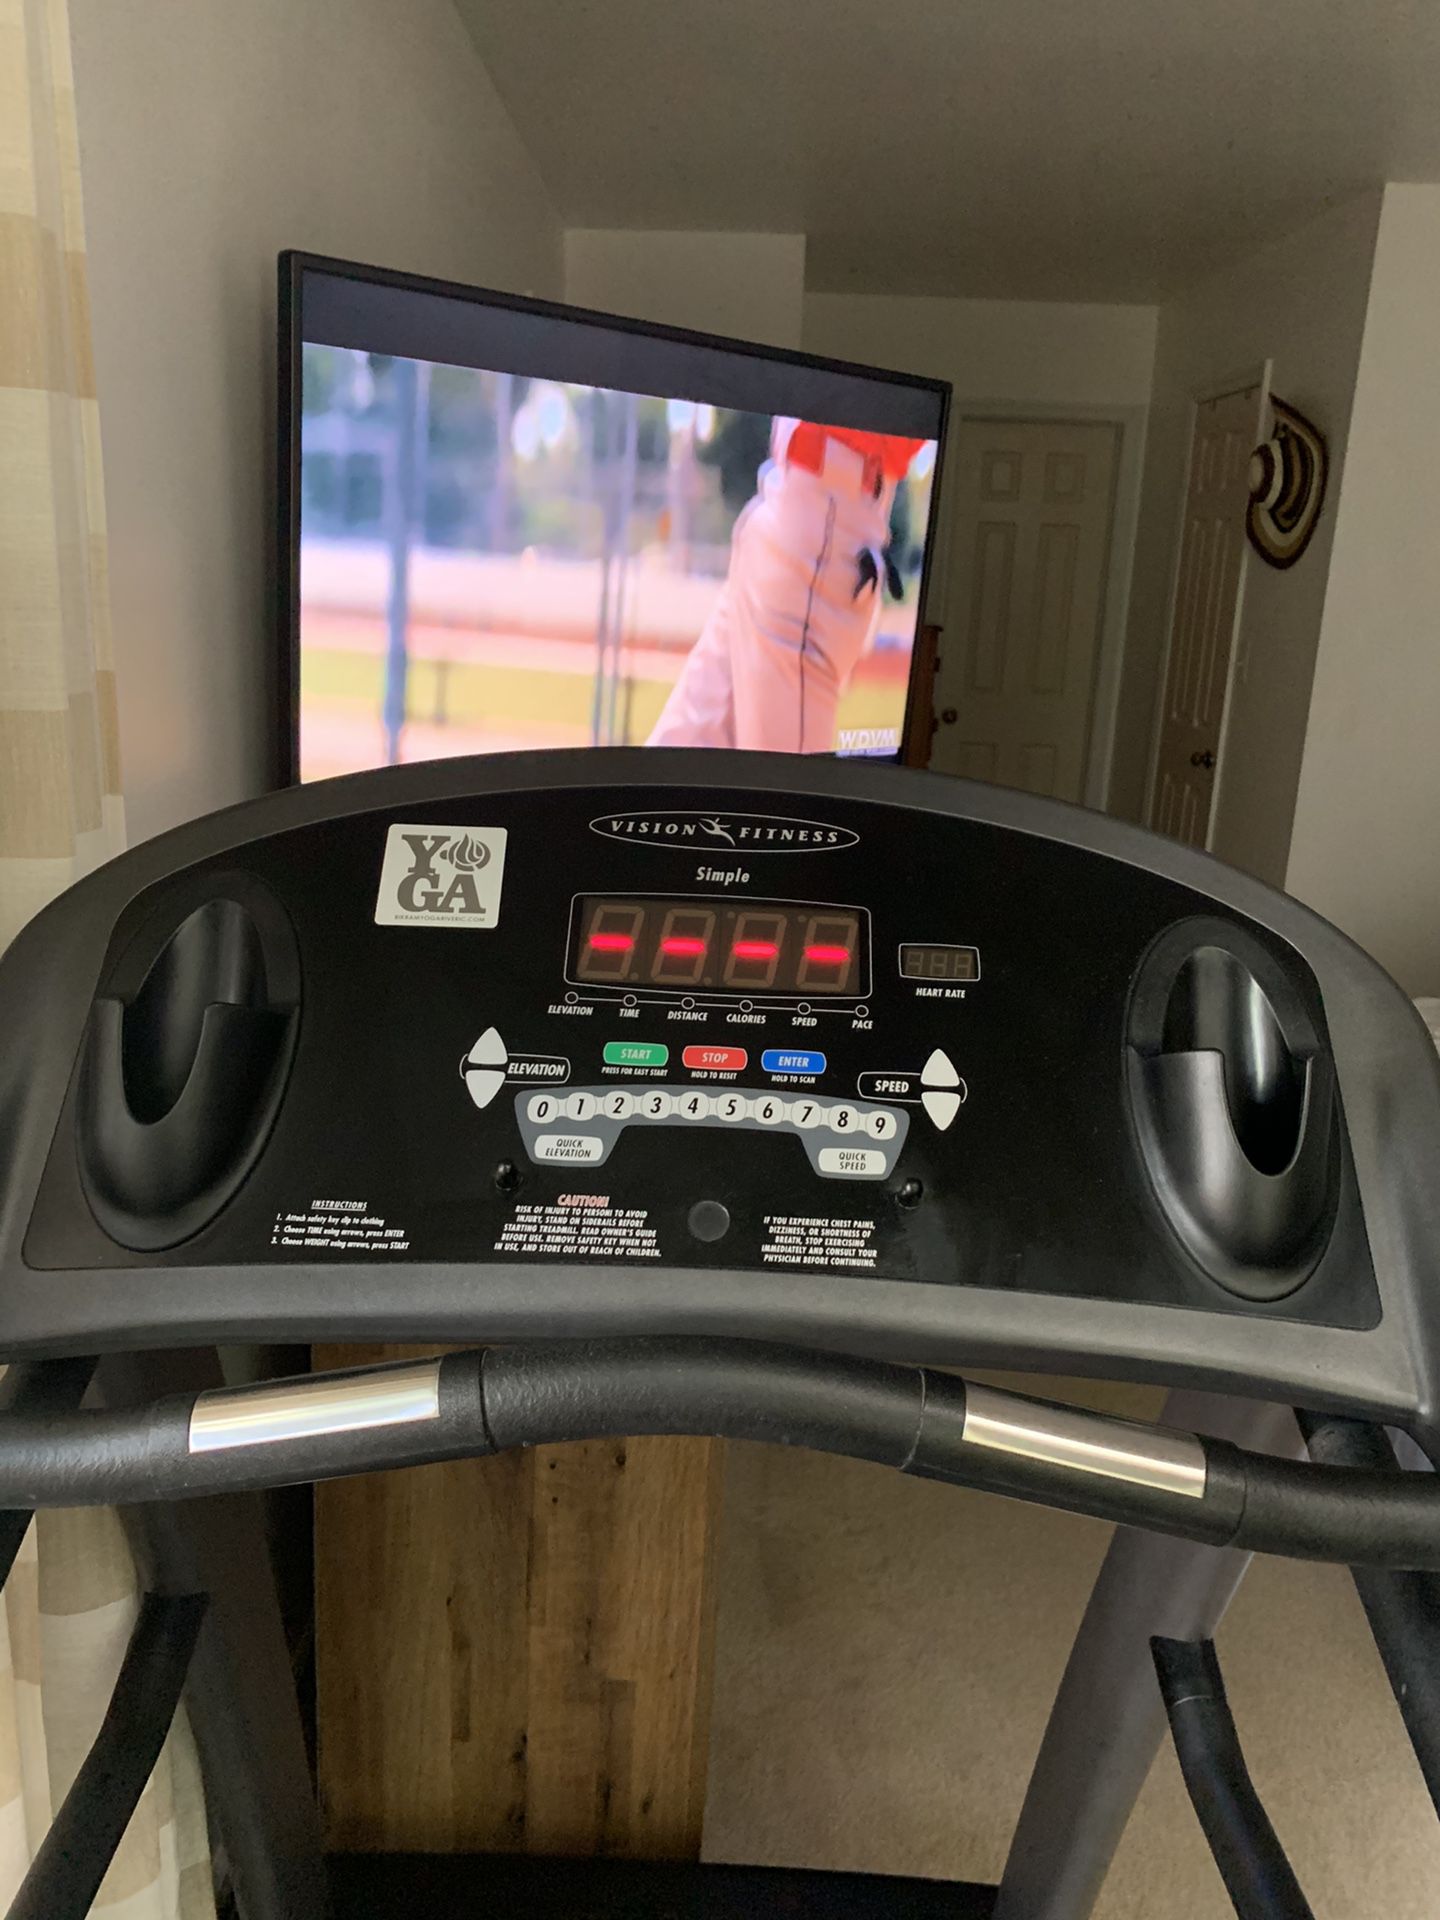 Vision Fitness Treadmill